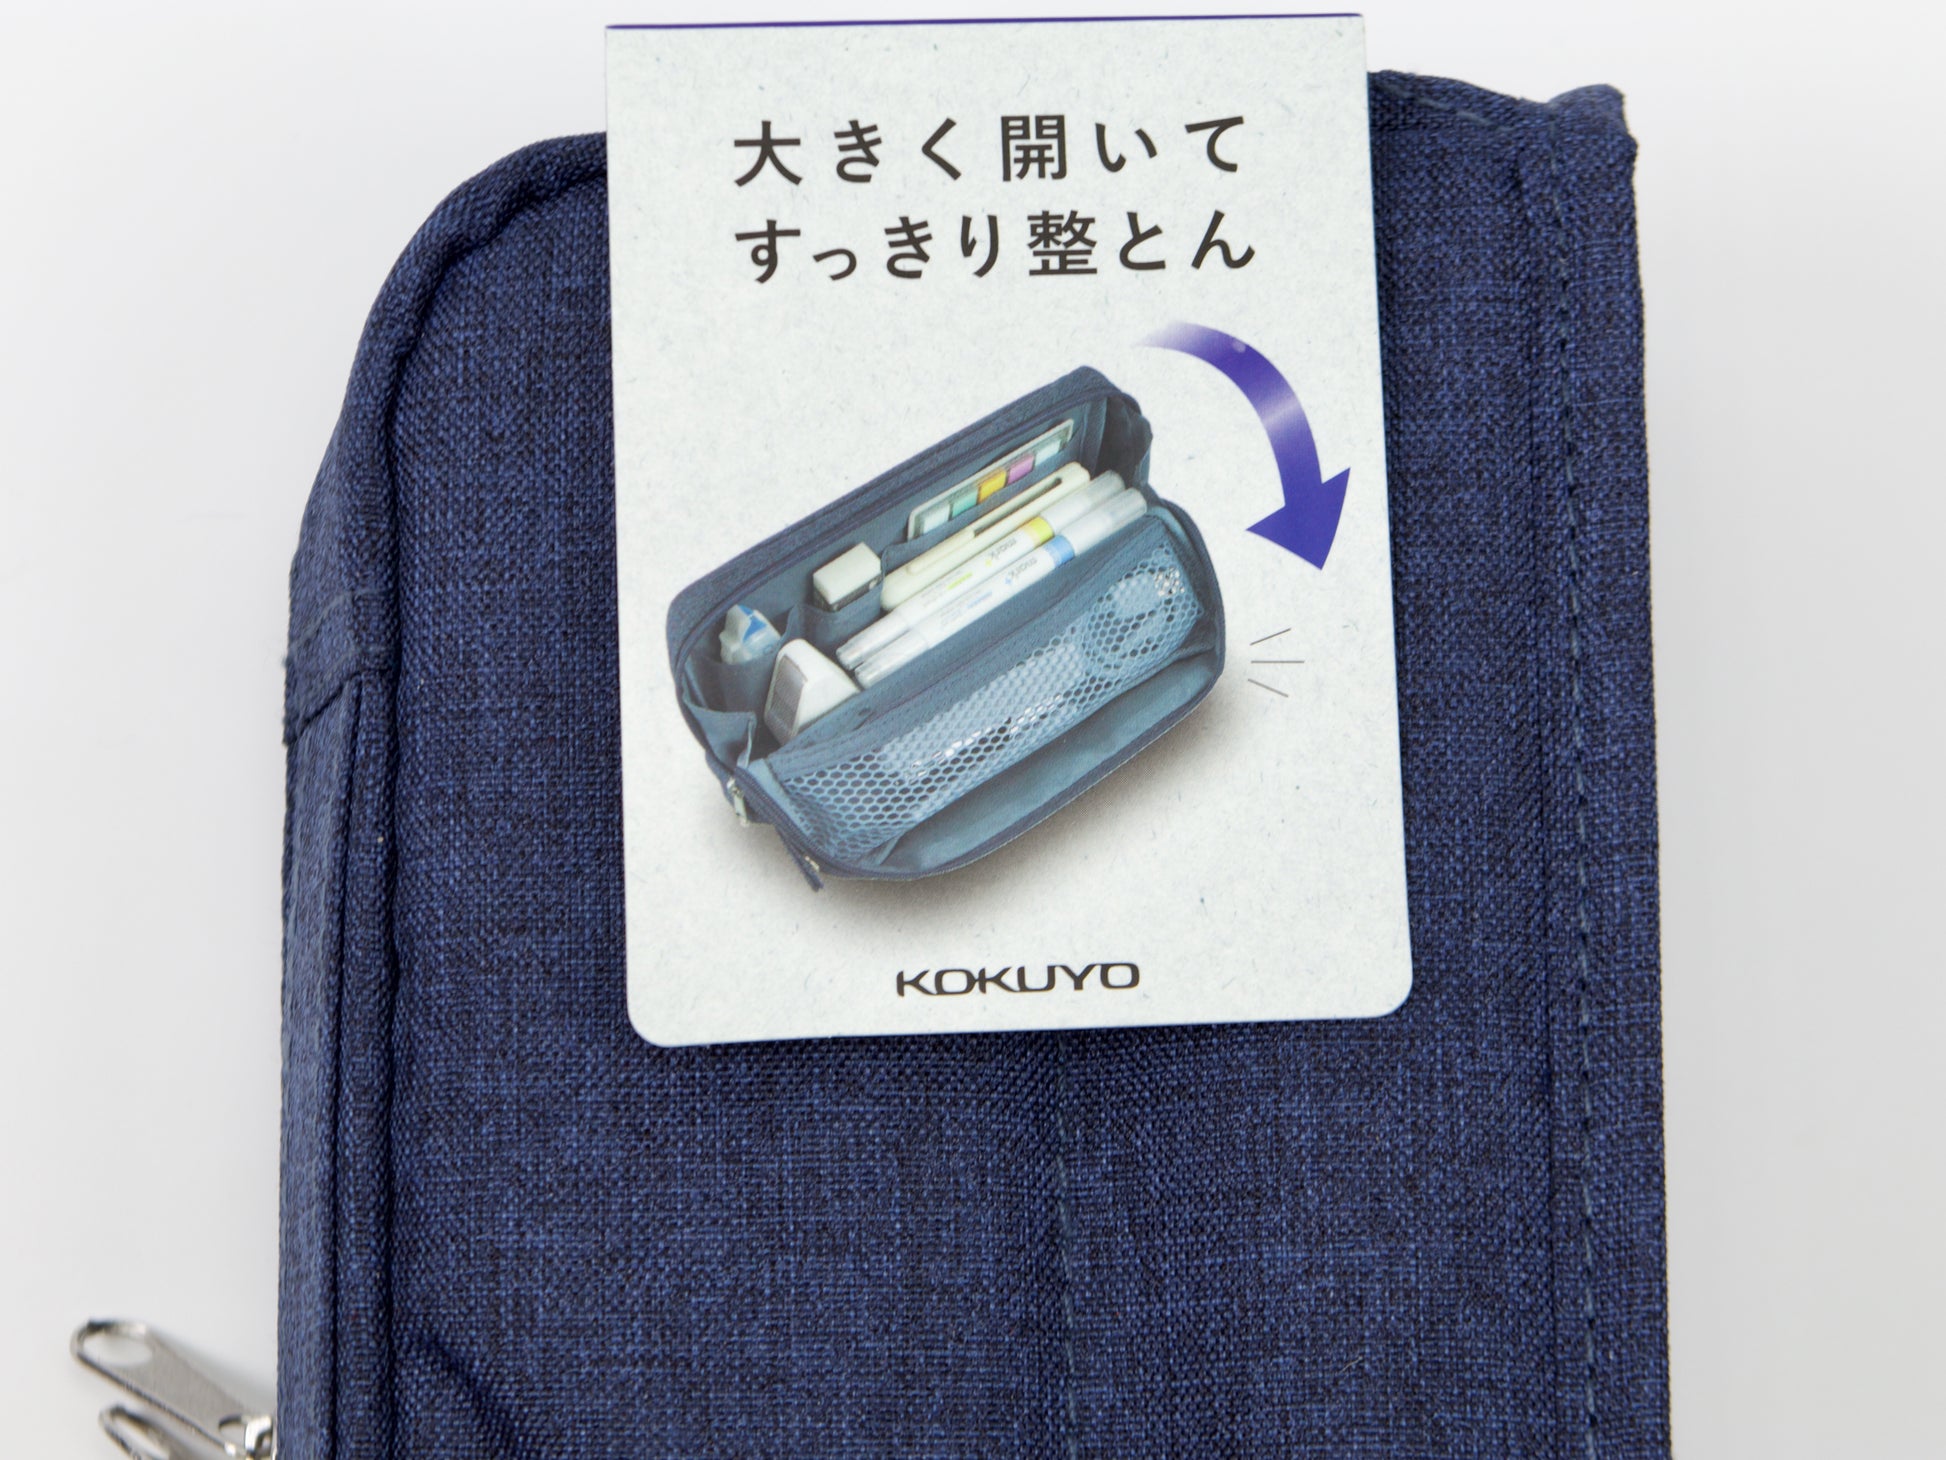 Kokuyo Cabaco Tool Pen Case - Tokyo Pen Shop